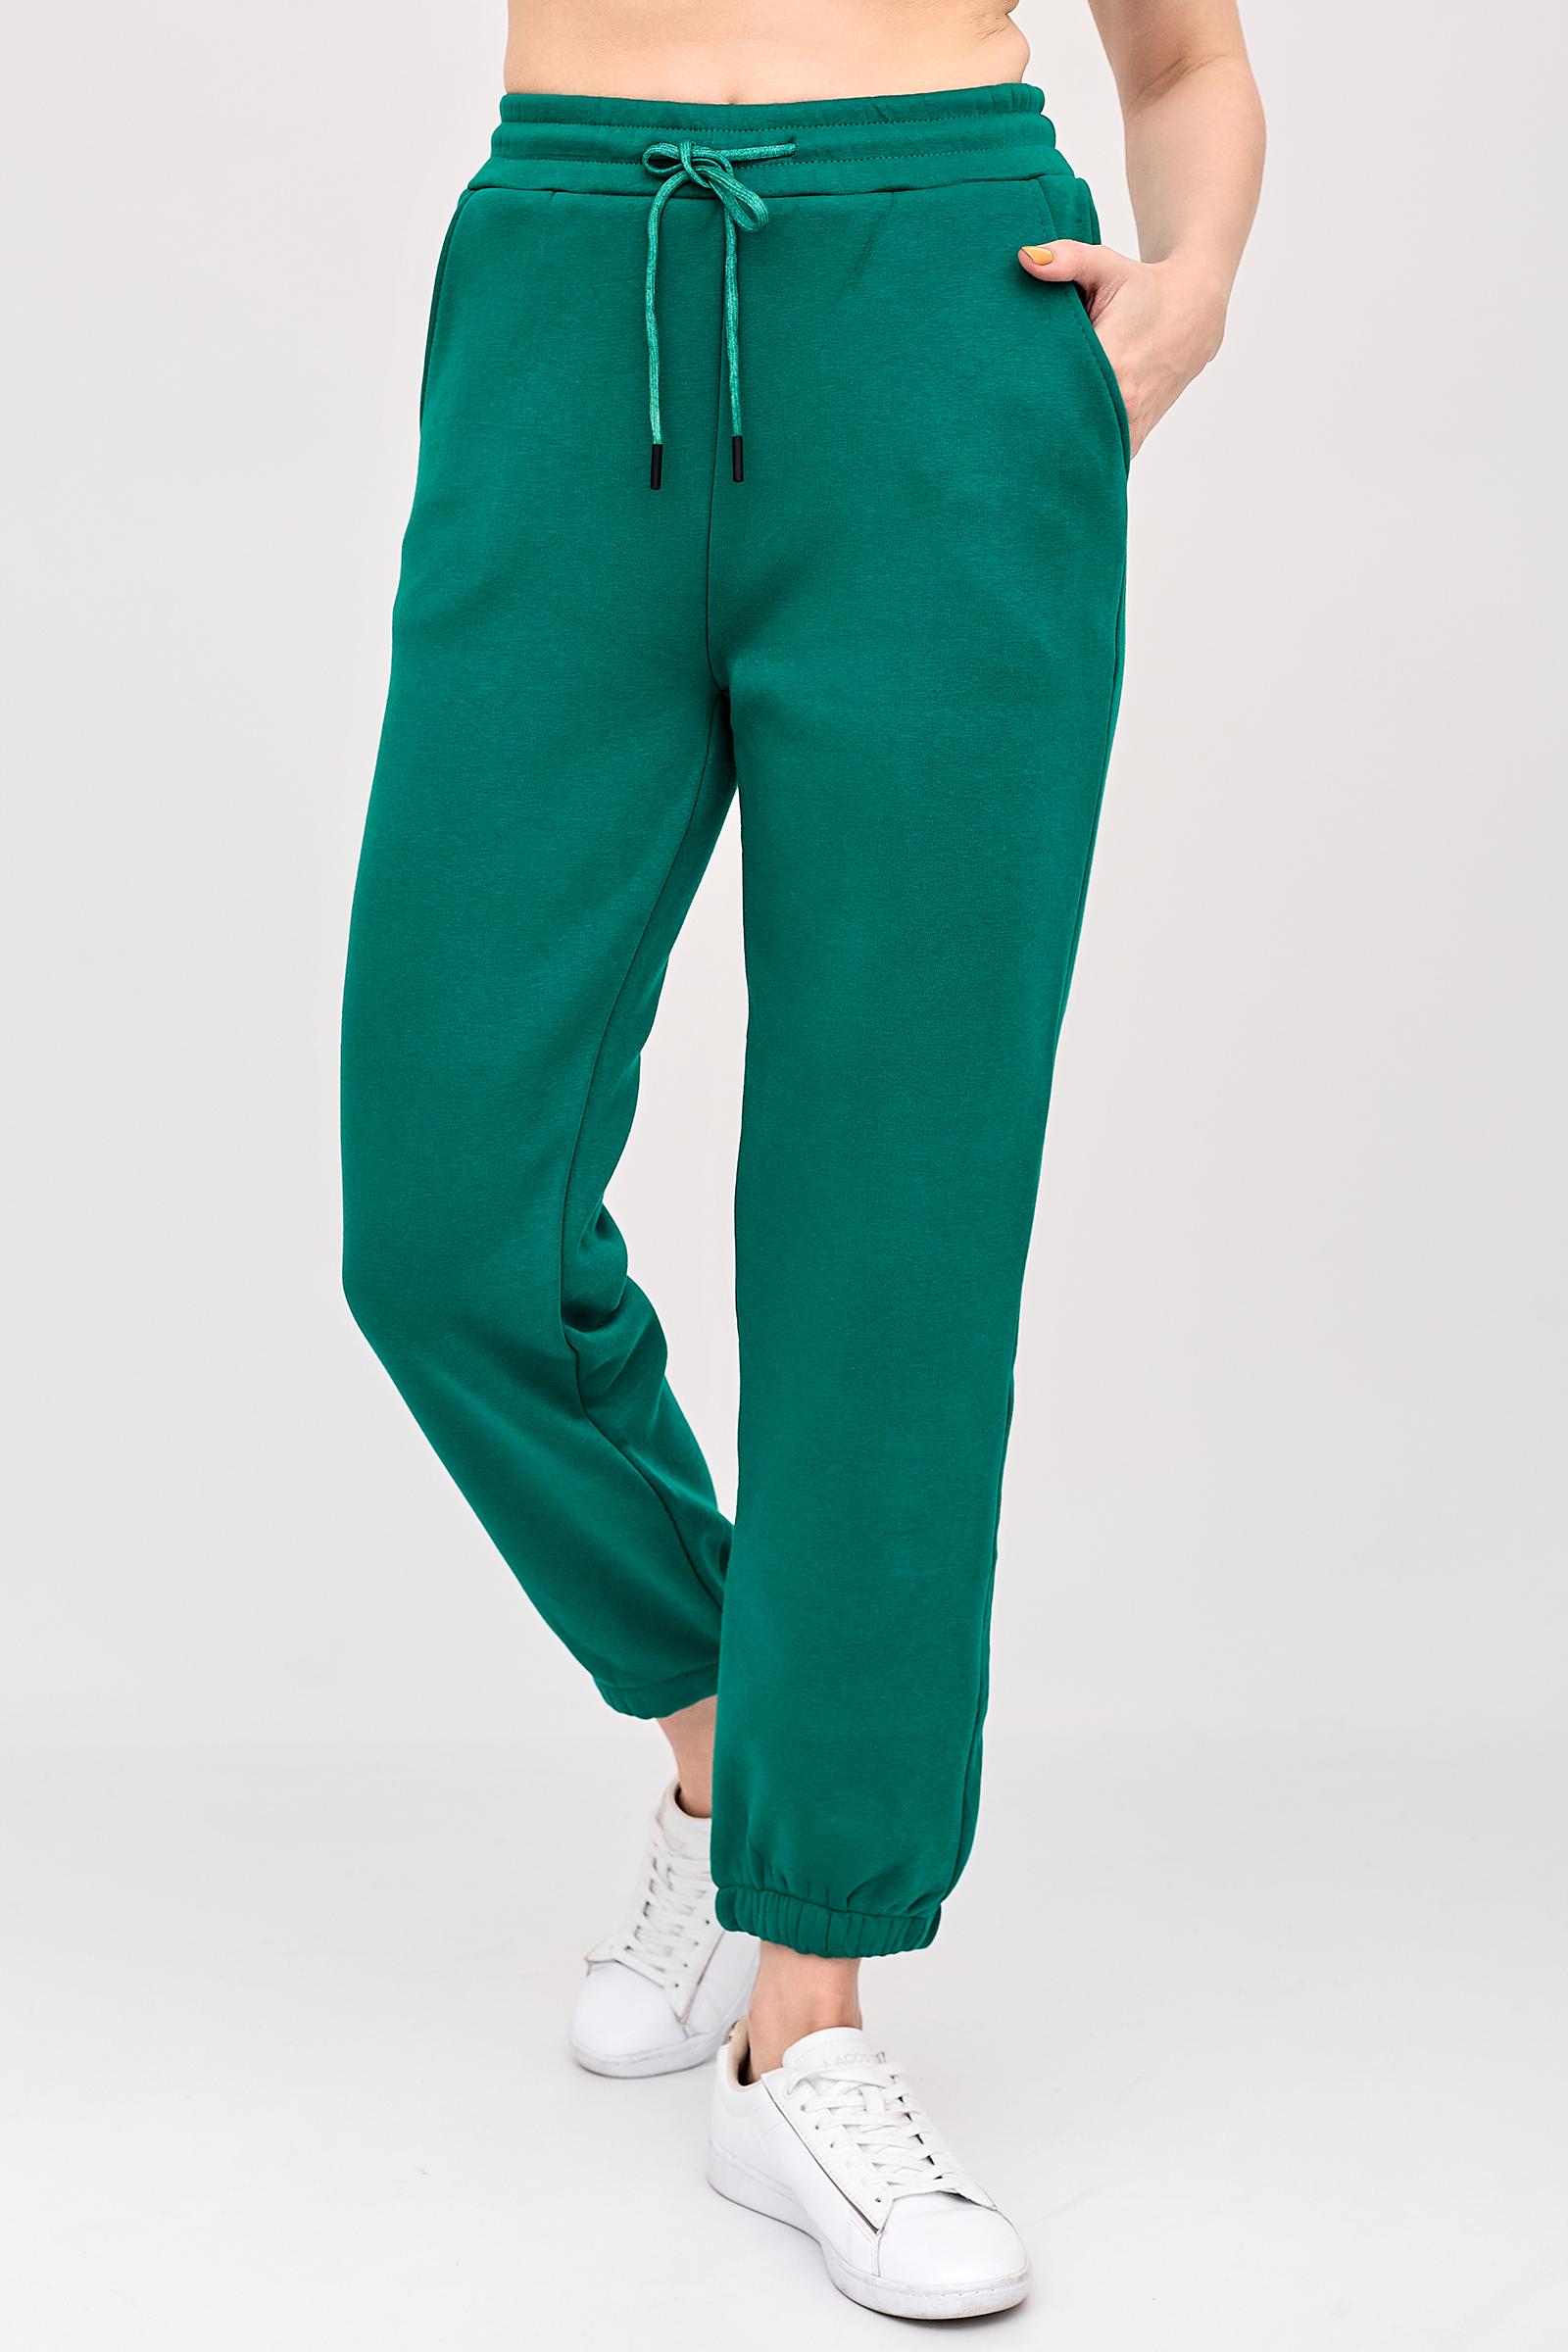 Спортивные брюки женские LikaDress 18-1743 зеленые 56 RU